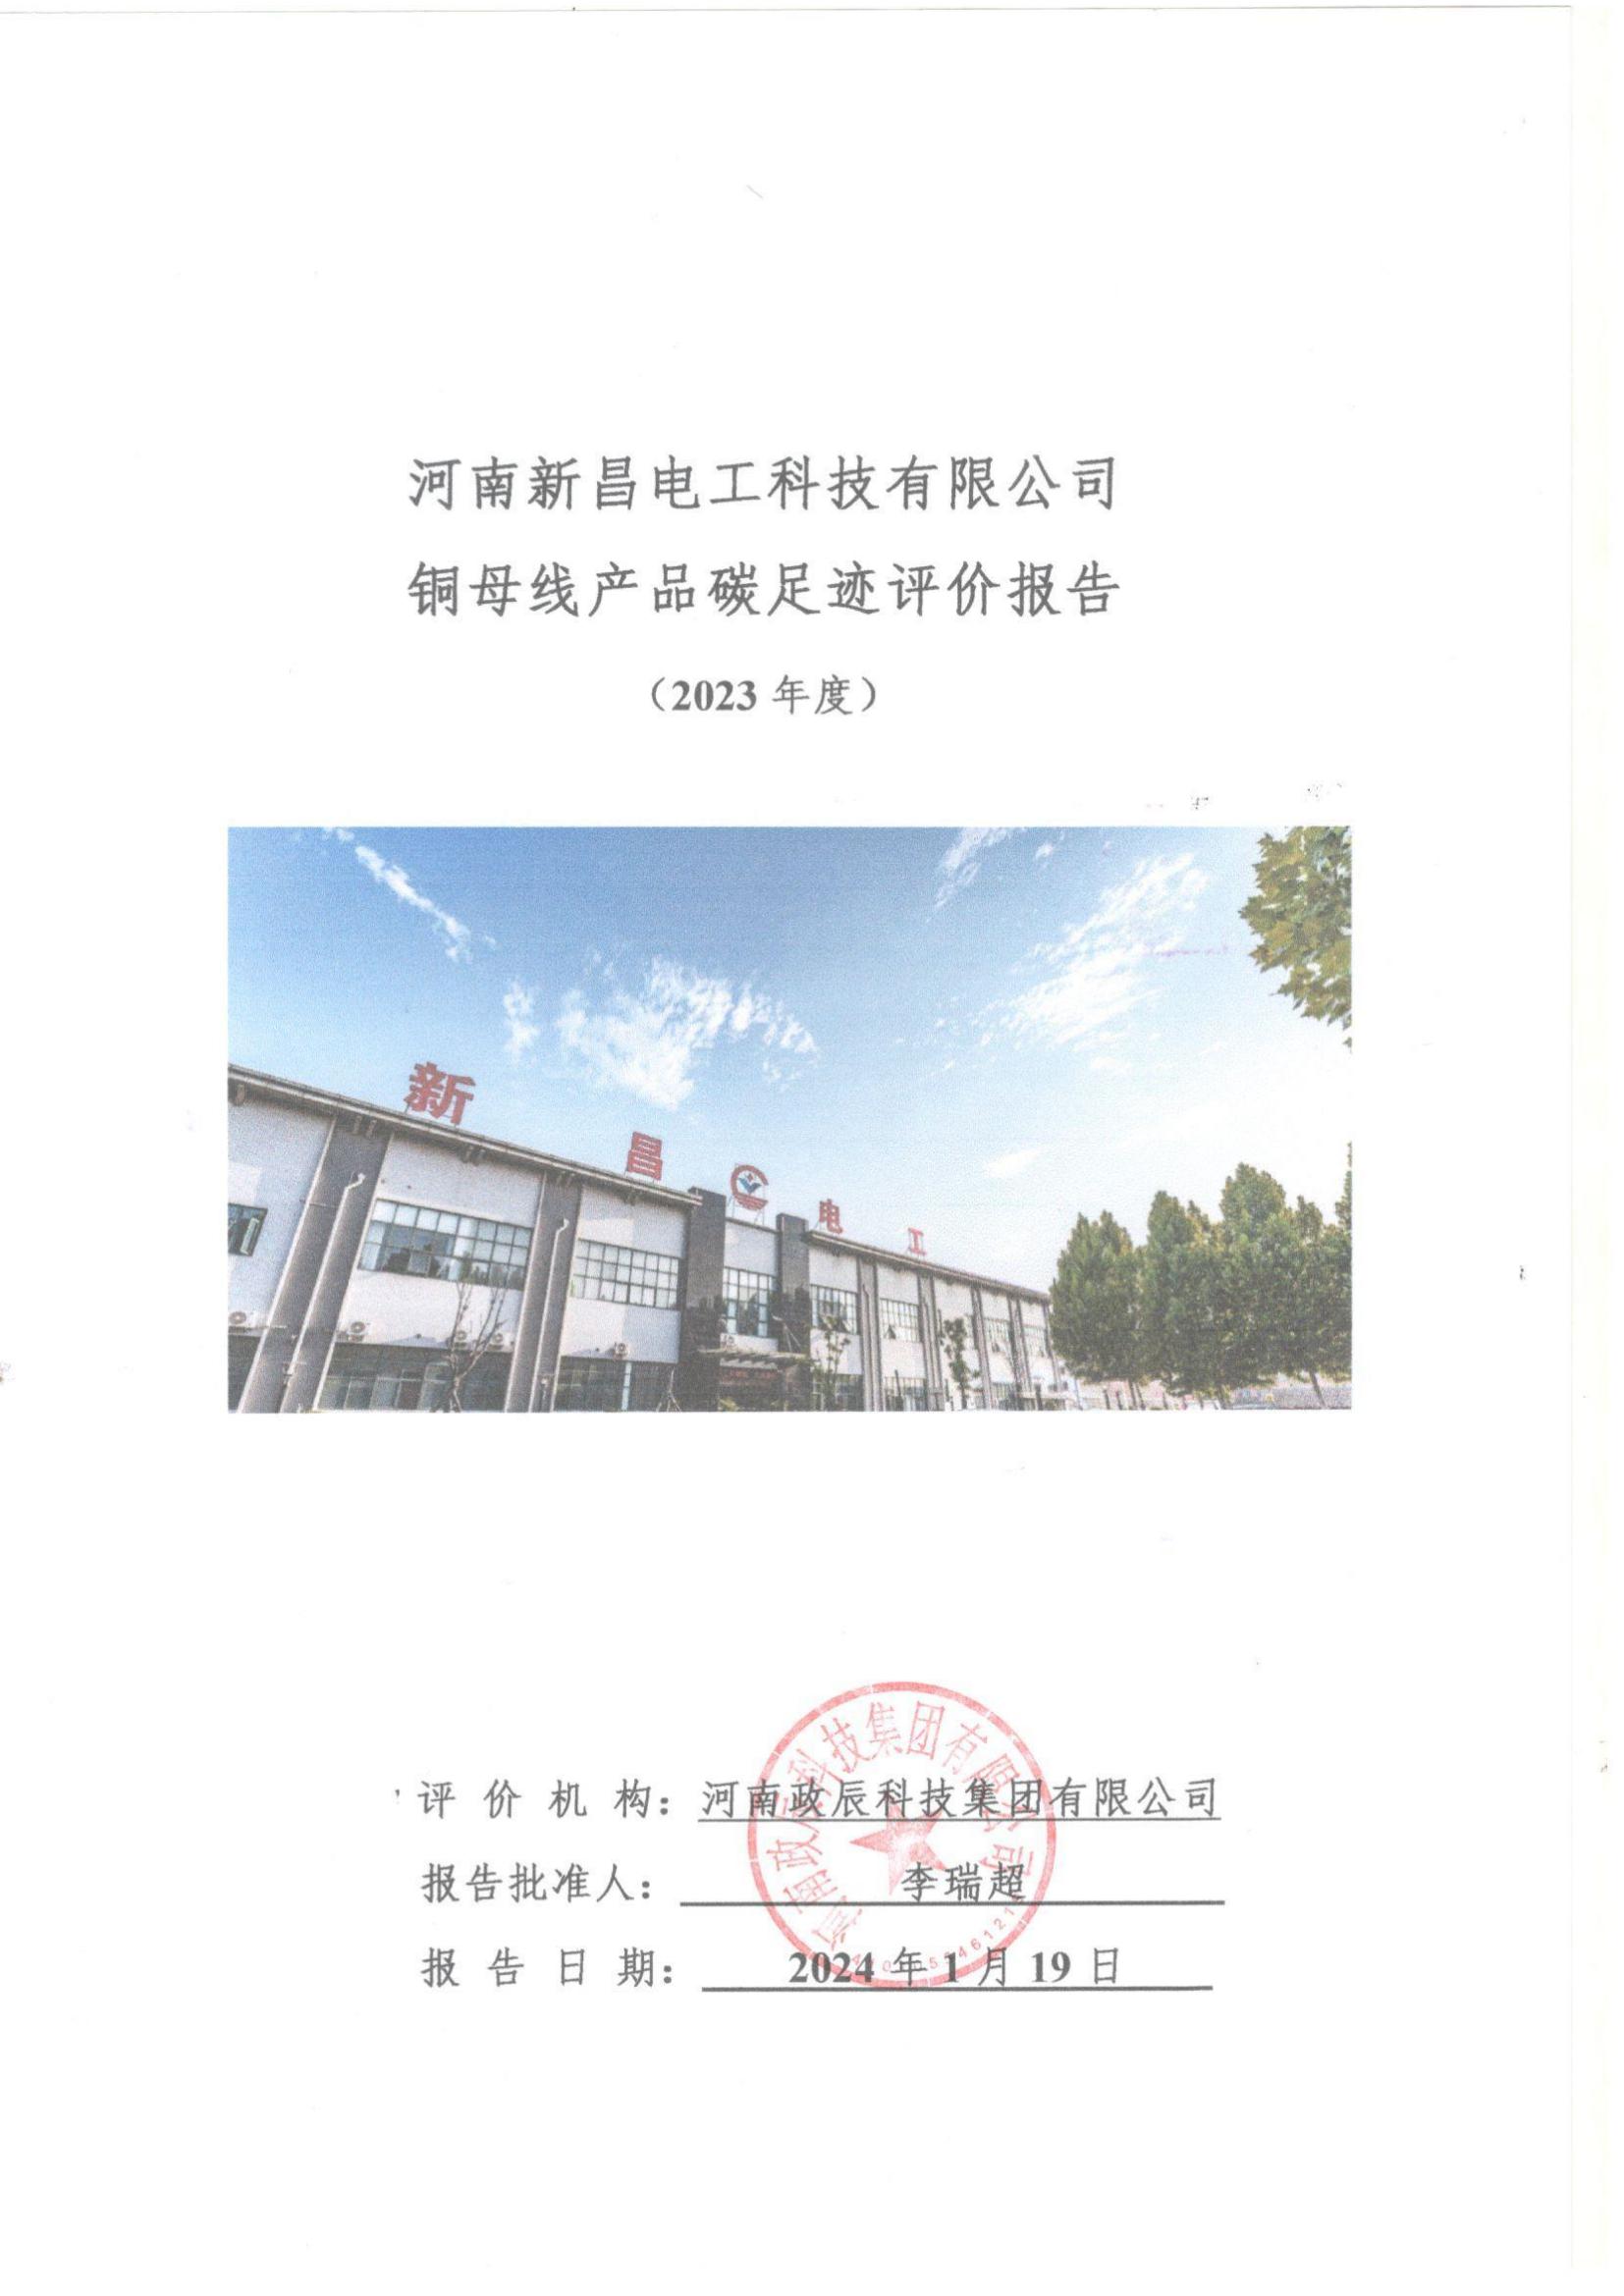 河南新昌电工科技有限公司碳足迹报告